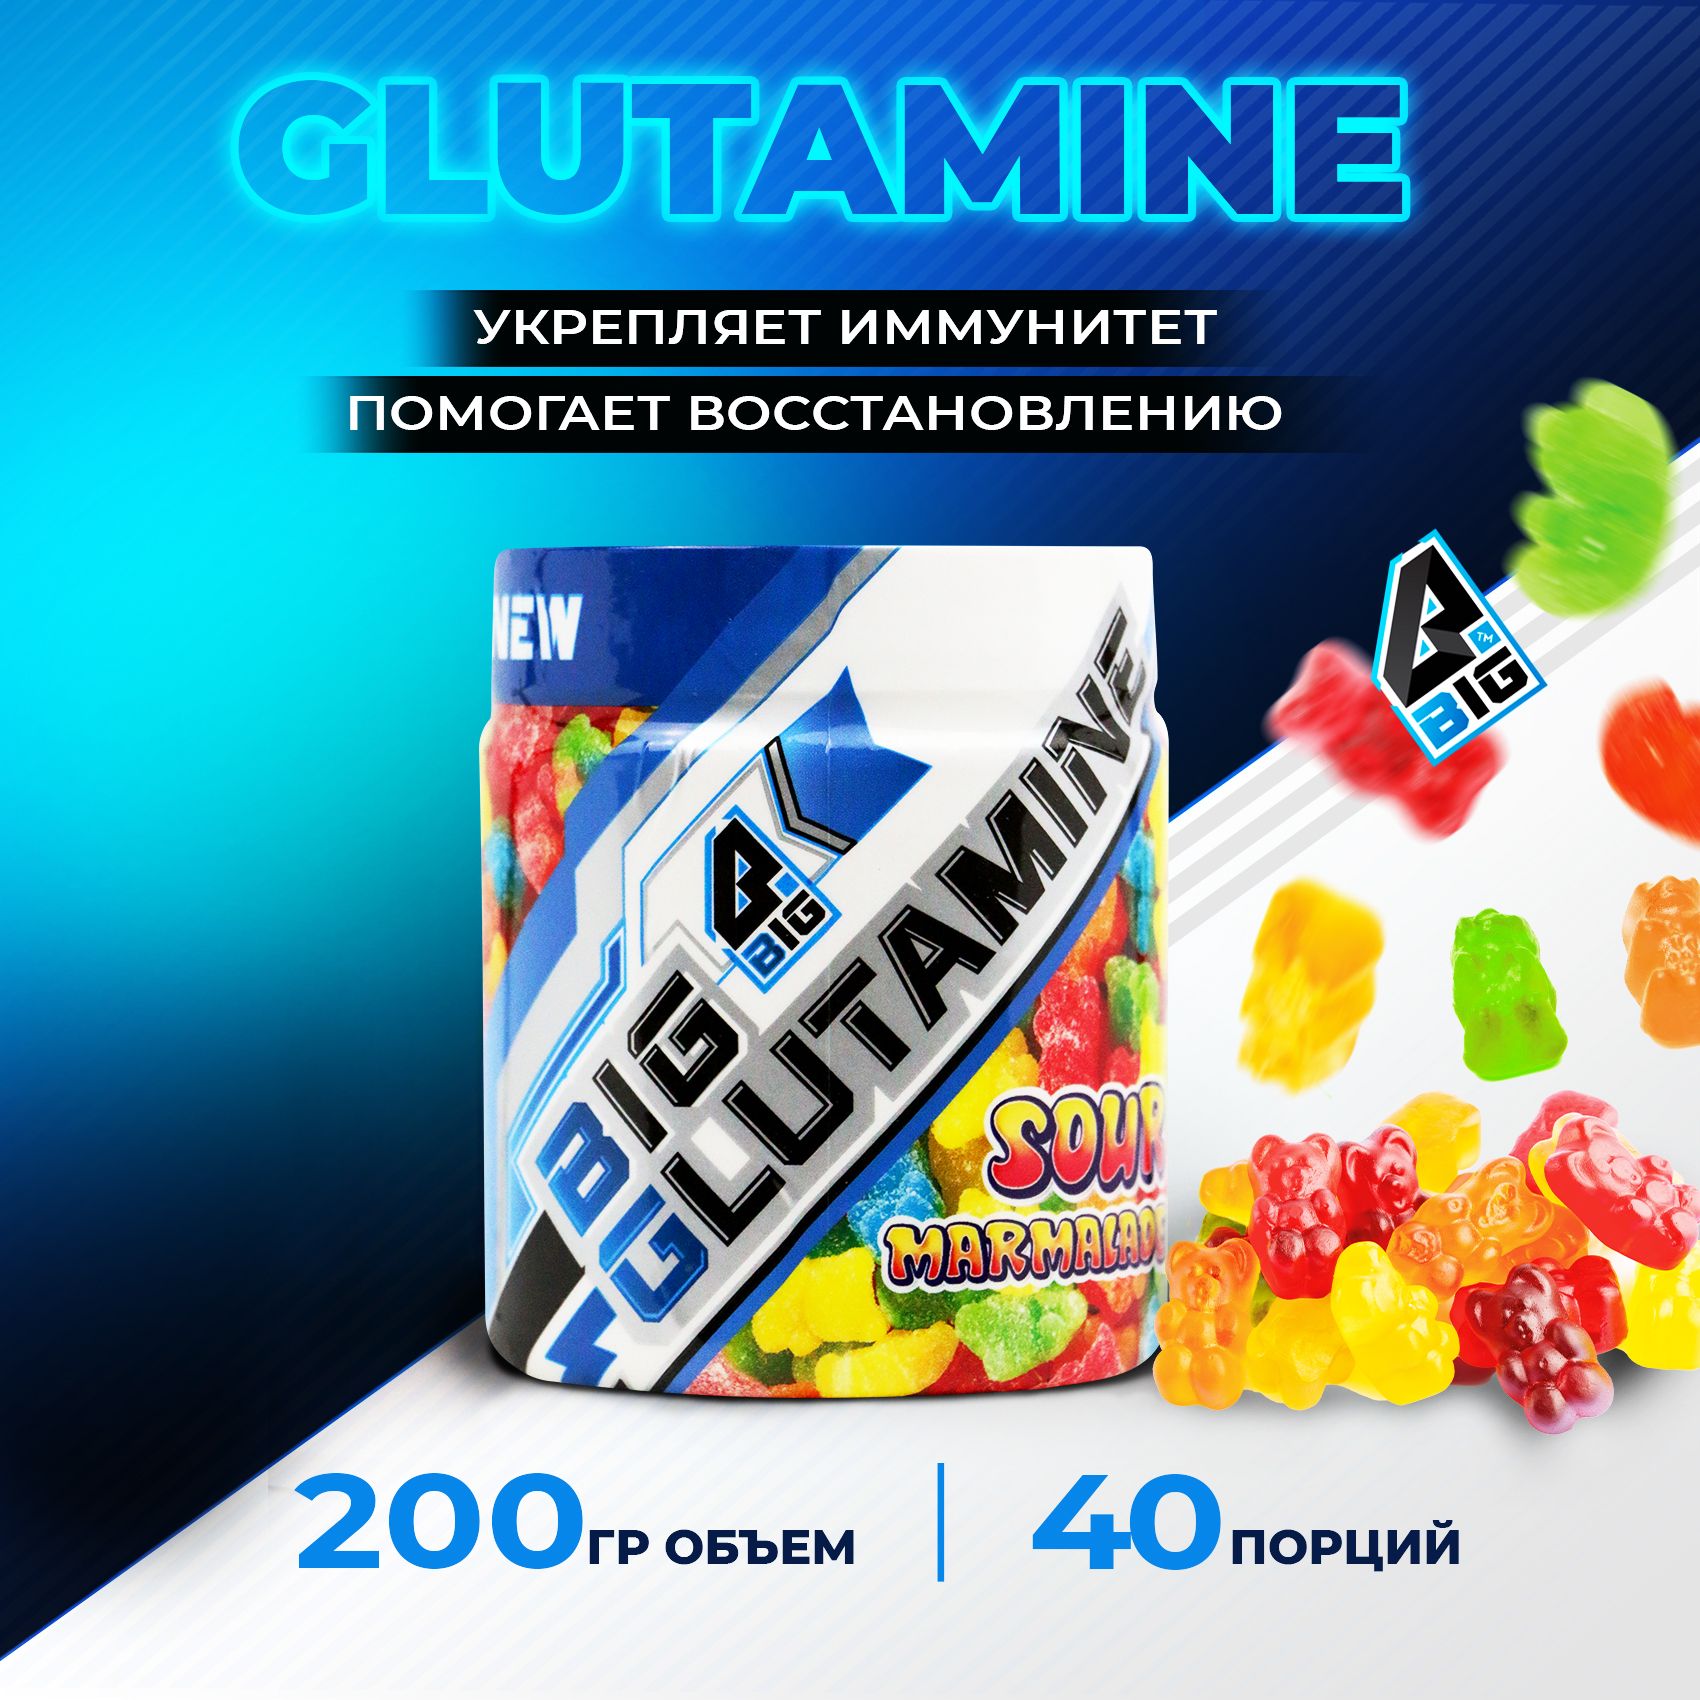 Глютамин(Glutamine)BIGSNTспортивноепитание/аминокислотадляростамышциукрепленияиммунитета,порошок,200г(40порций),вкусМармелад